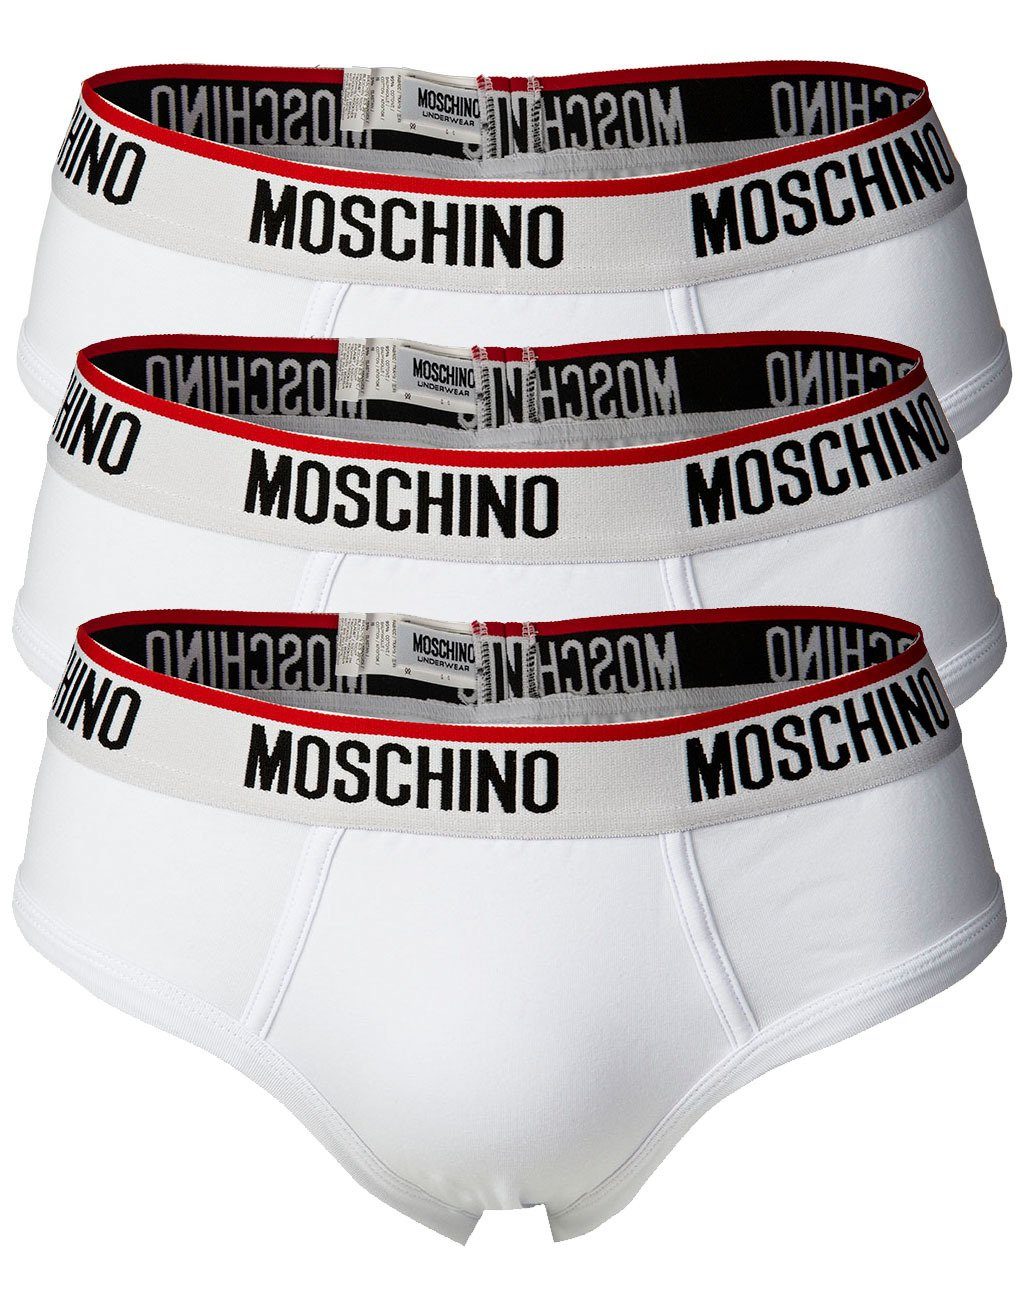 Moschino Slip Herren Slips 3er Pack - Briefs, Unterhose, Cotton Weiß